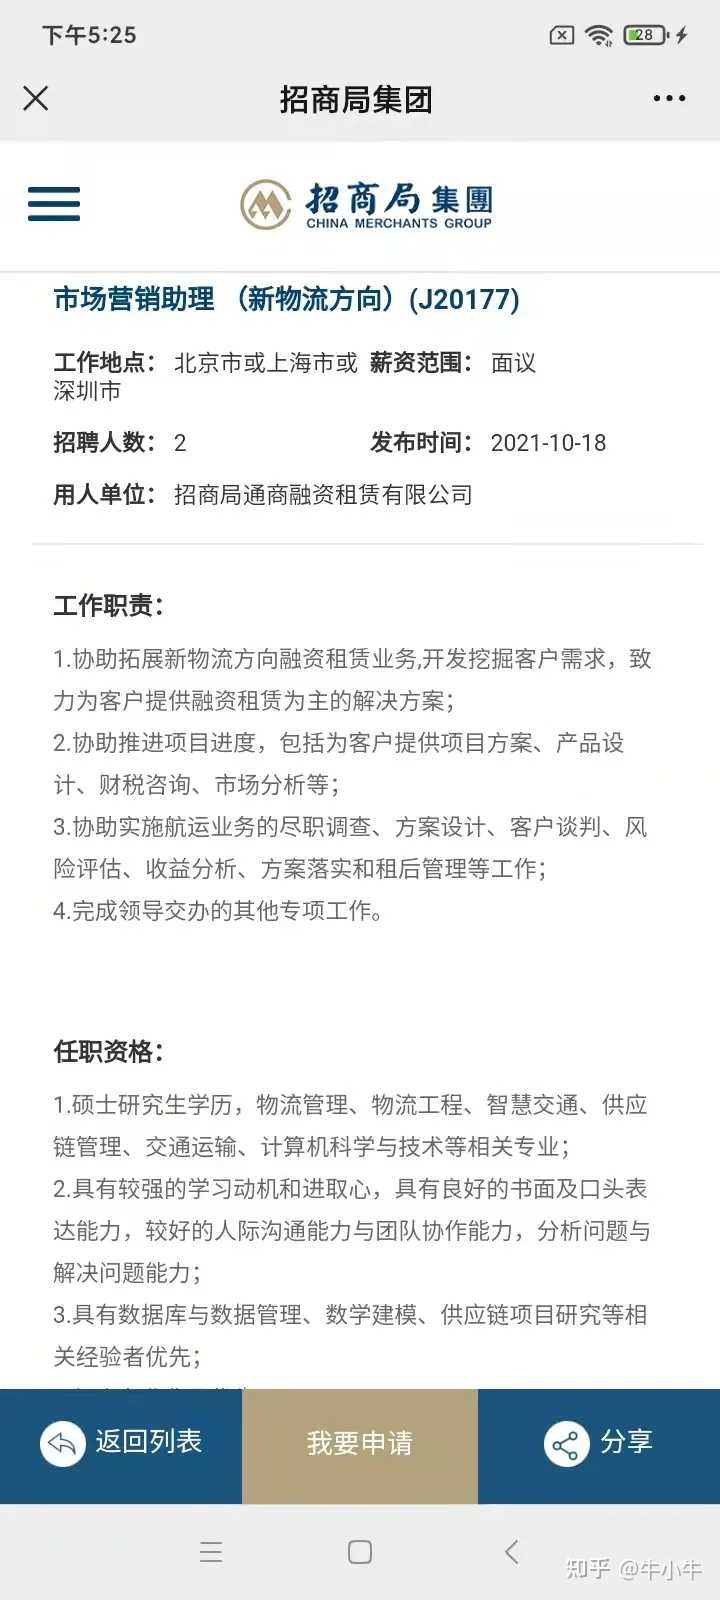 有人参加过亚博登录注册平台陕铁物流集团有限公司的面试和笔试吗